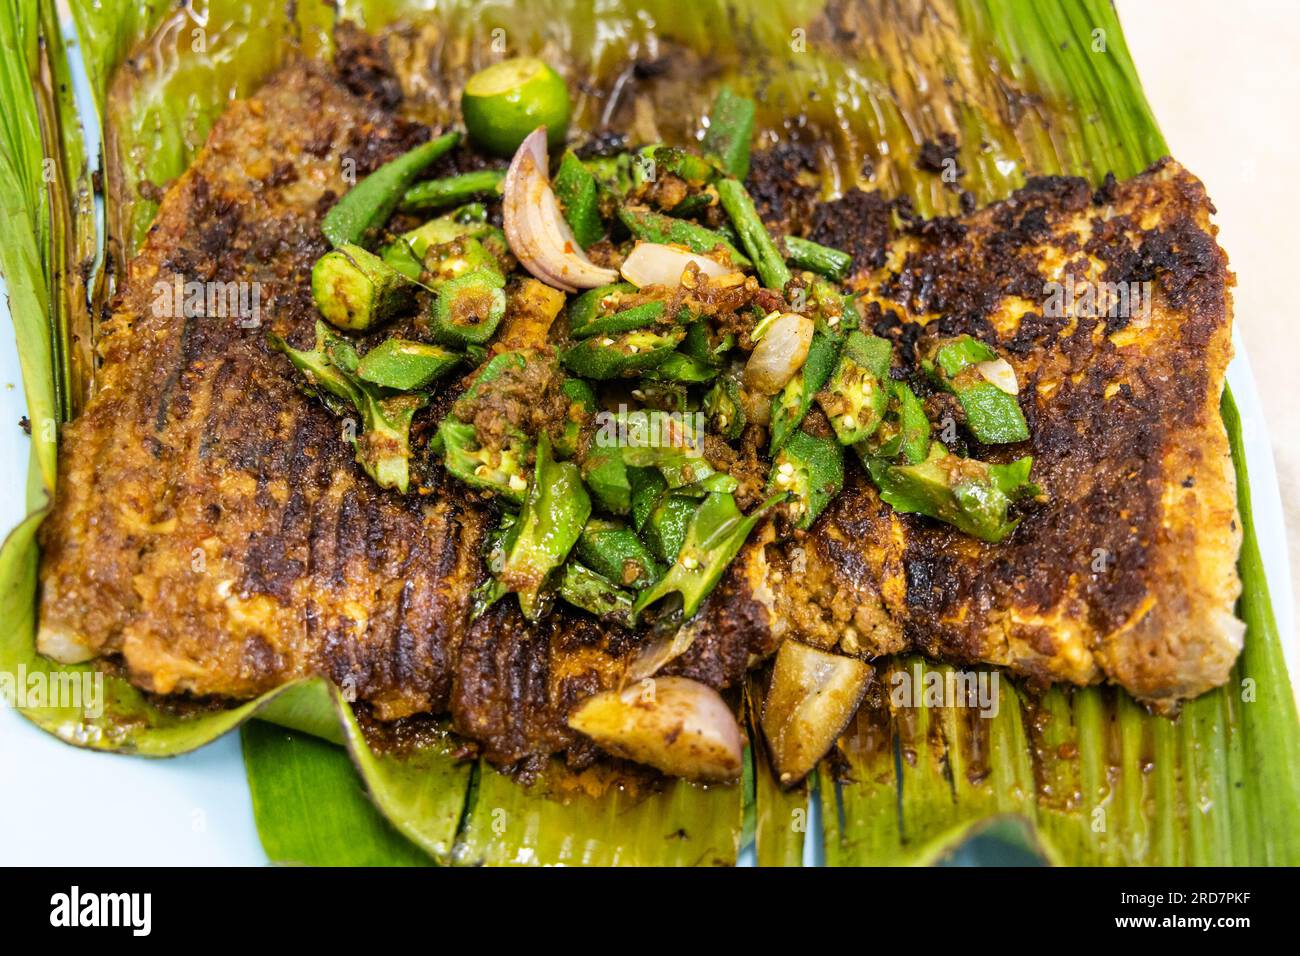 Gros plan vue aérienne de poisson raide grillé avec des épices garnies de légumes d'okra sur la feuille de bananier nourriture populaire en Malaisie Banque D'Images